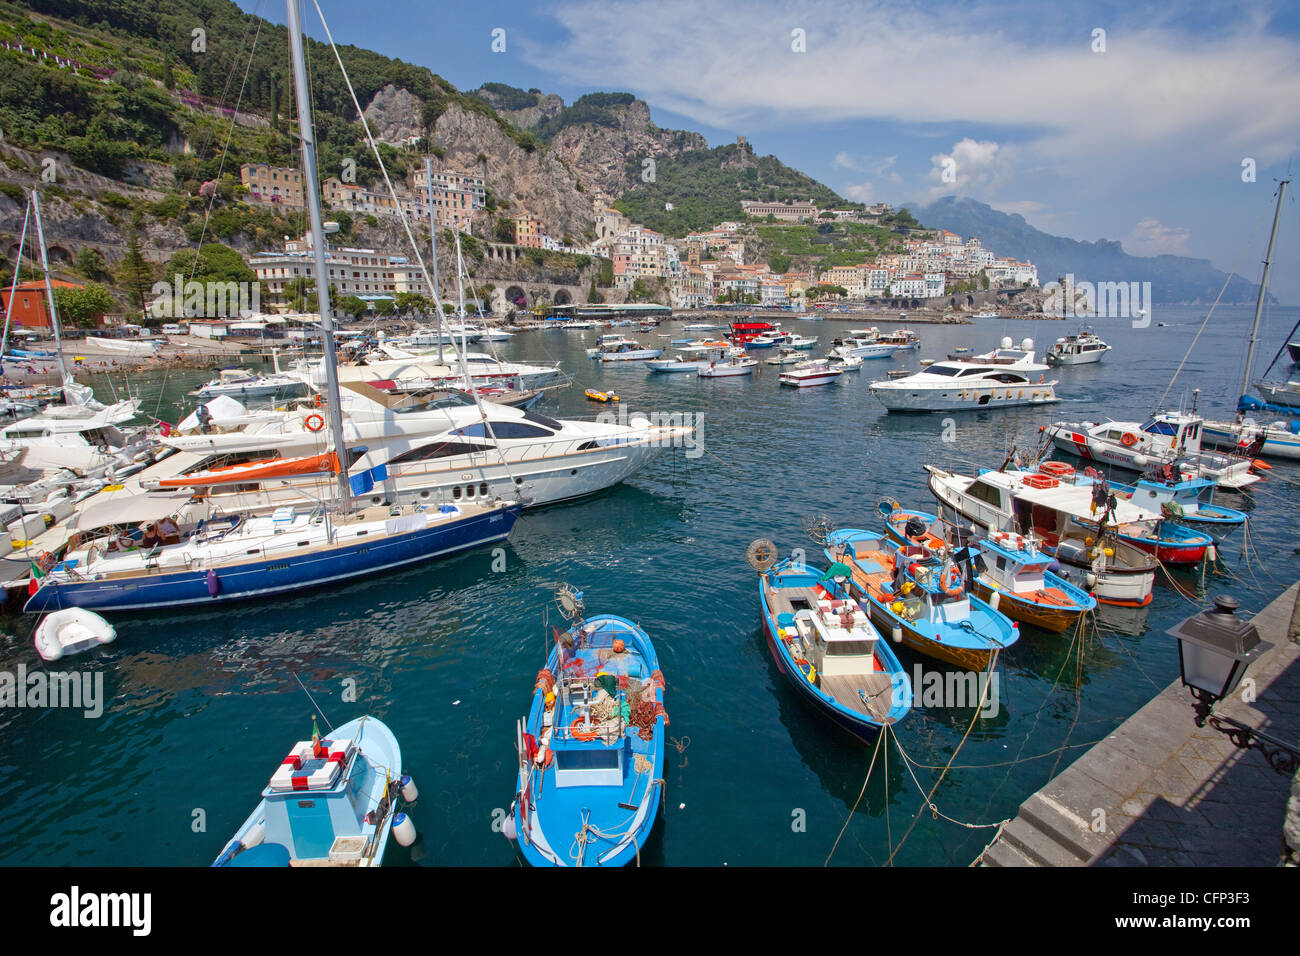 Los barcos de pesca y embarcaciones en el puerto de Amalfi, Costa de Amalfi, sitio del Patrimonio Mundial de la Unesco, la Región de Campania, Italia, el mar Mediterráneo, Europa Foto de stock